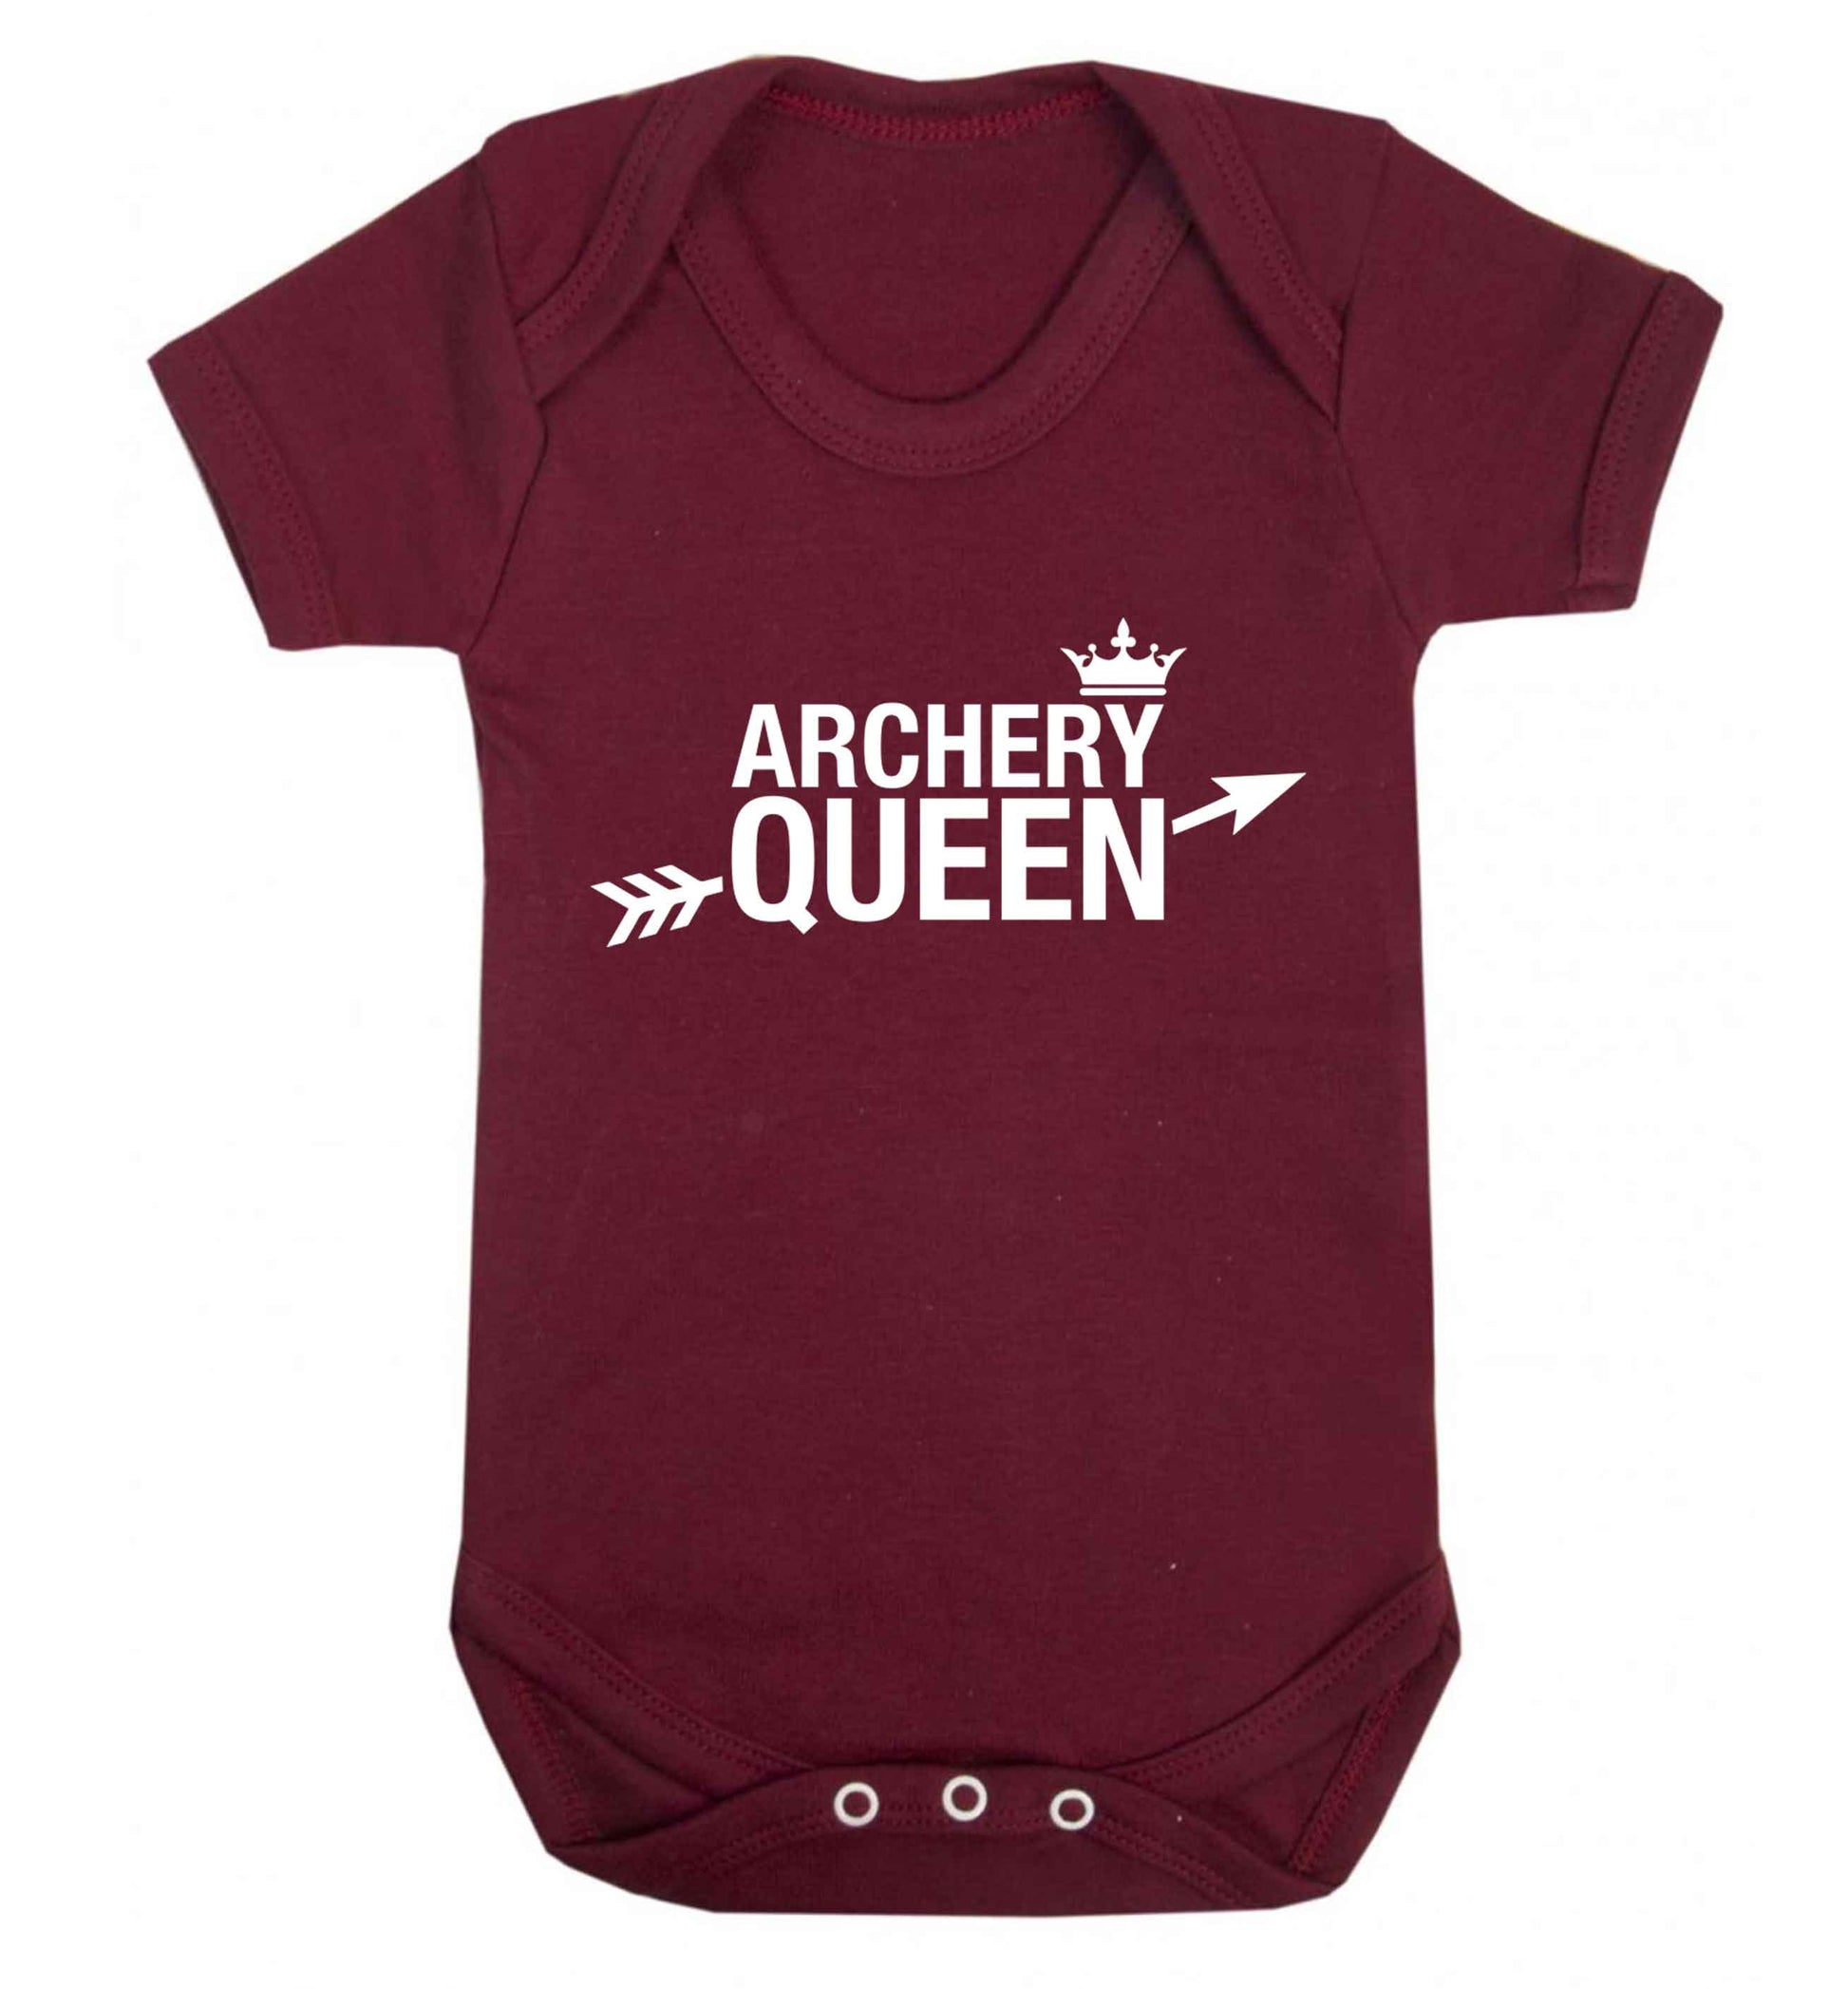 Archery queen Baby Vest maroon 18-24 months